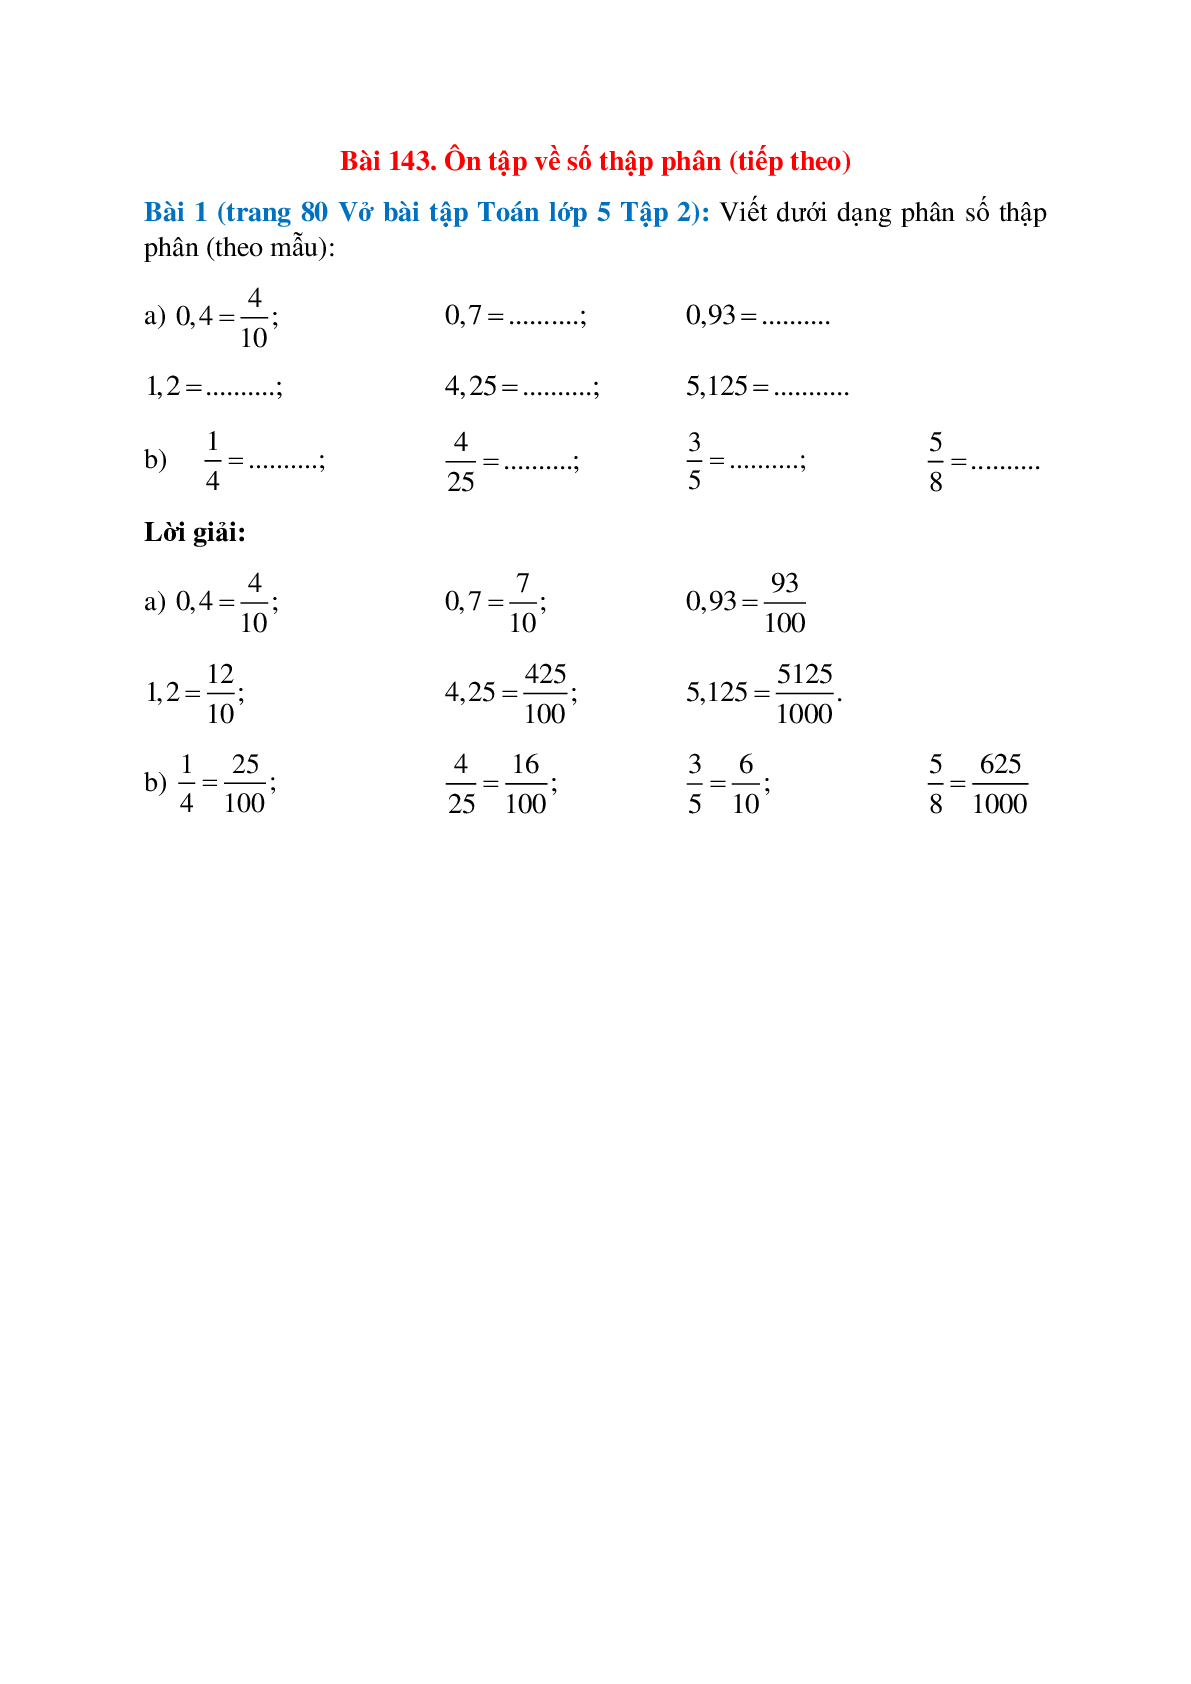 Viết dưới dạng phân số thập phân (theo mẫu): 0,4=4/10  (trang 1)